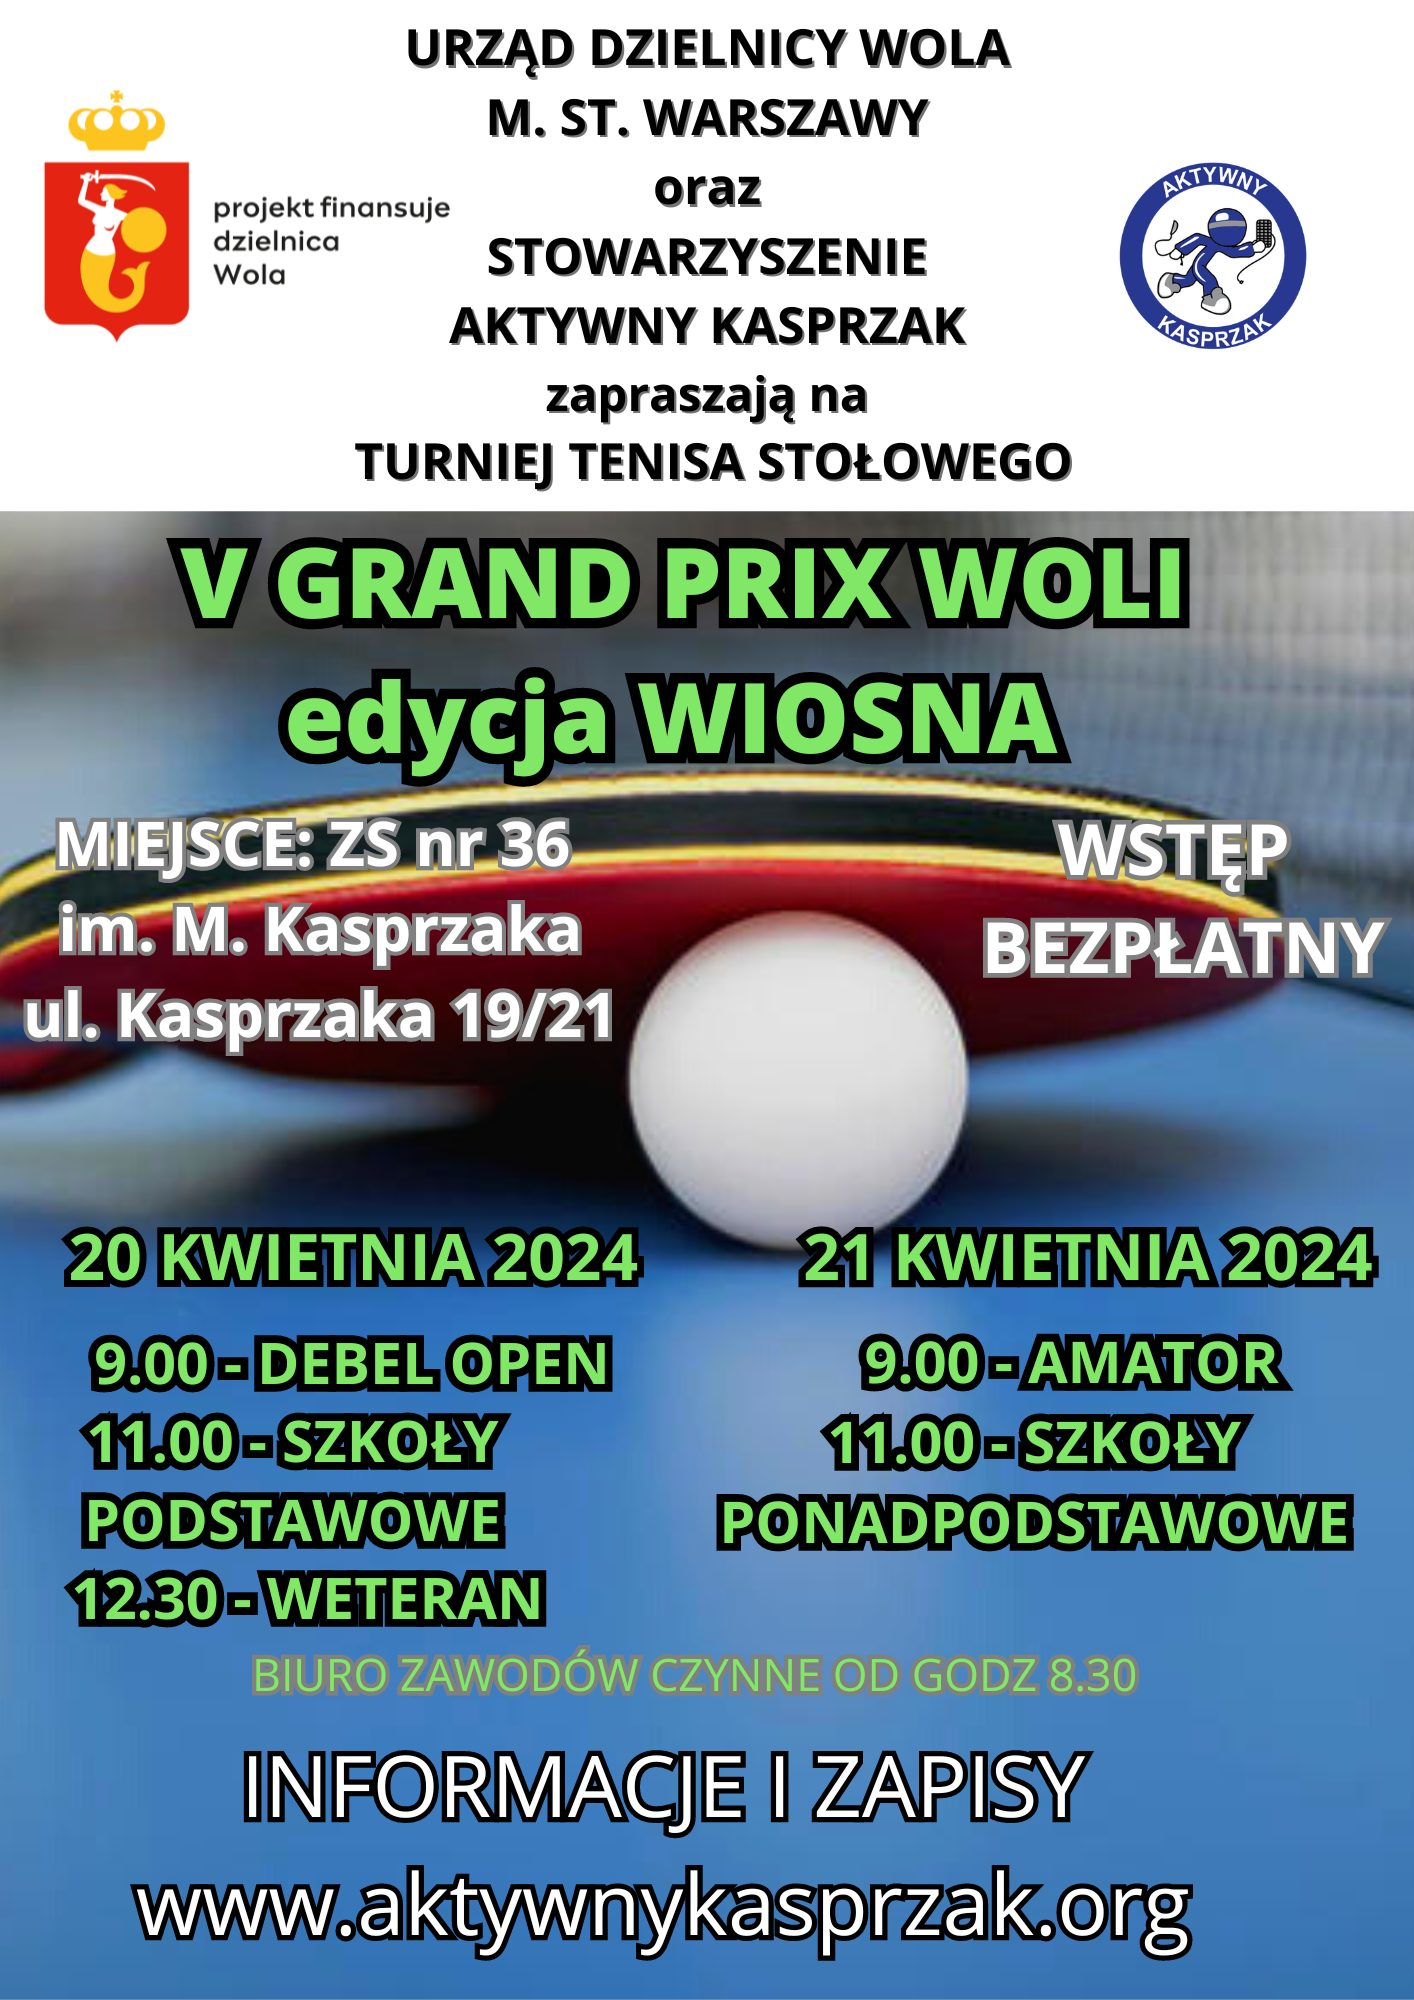 Plakat turnieju Turniej tenisa stołowego VGRAND PRIX WOLA edycja WIOSNA (21 kwietnia 2024)